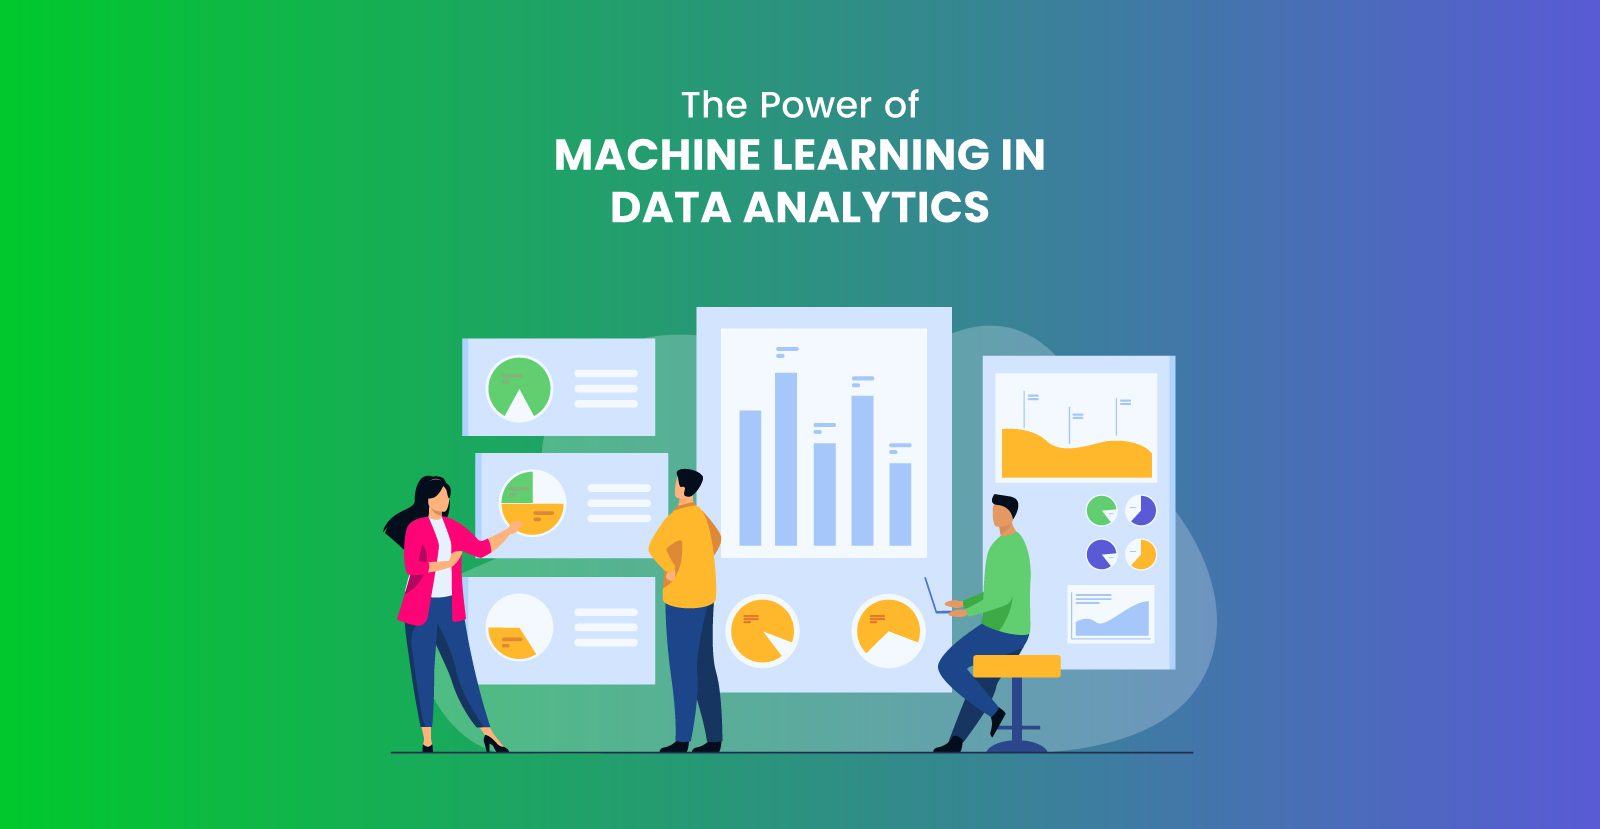 Machine learning in data analytics